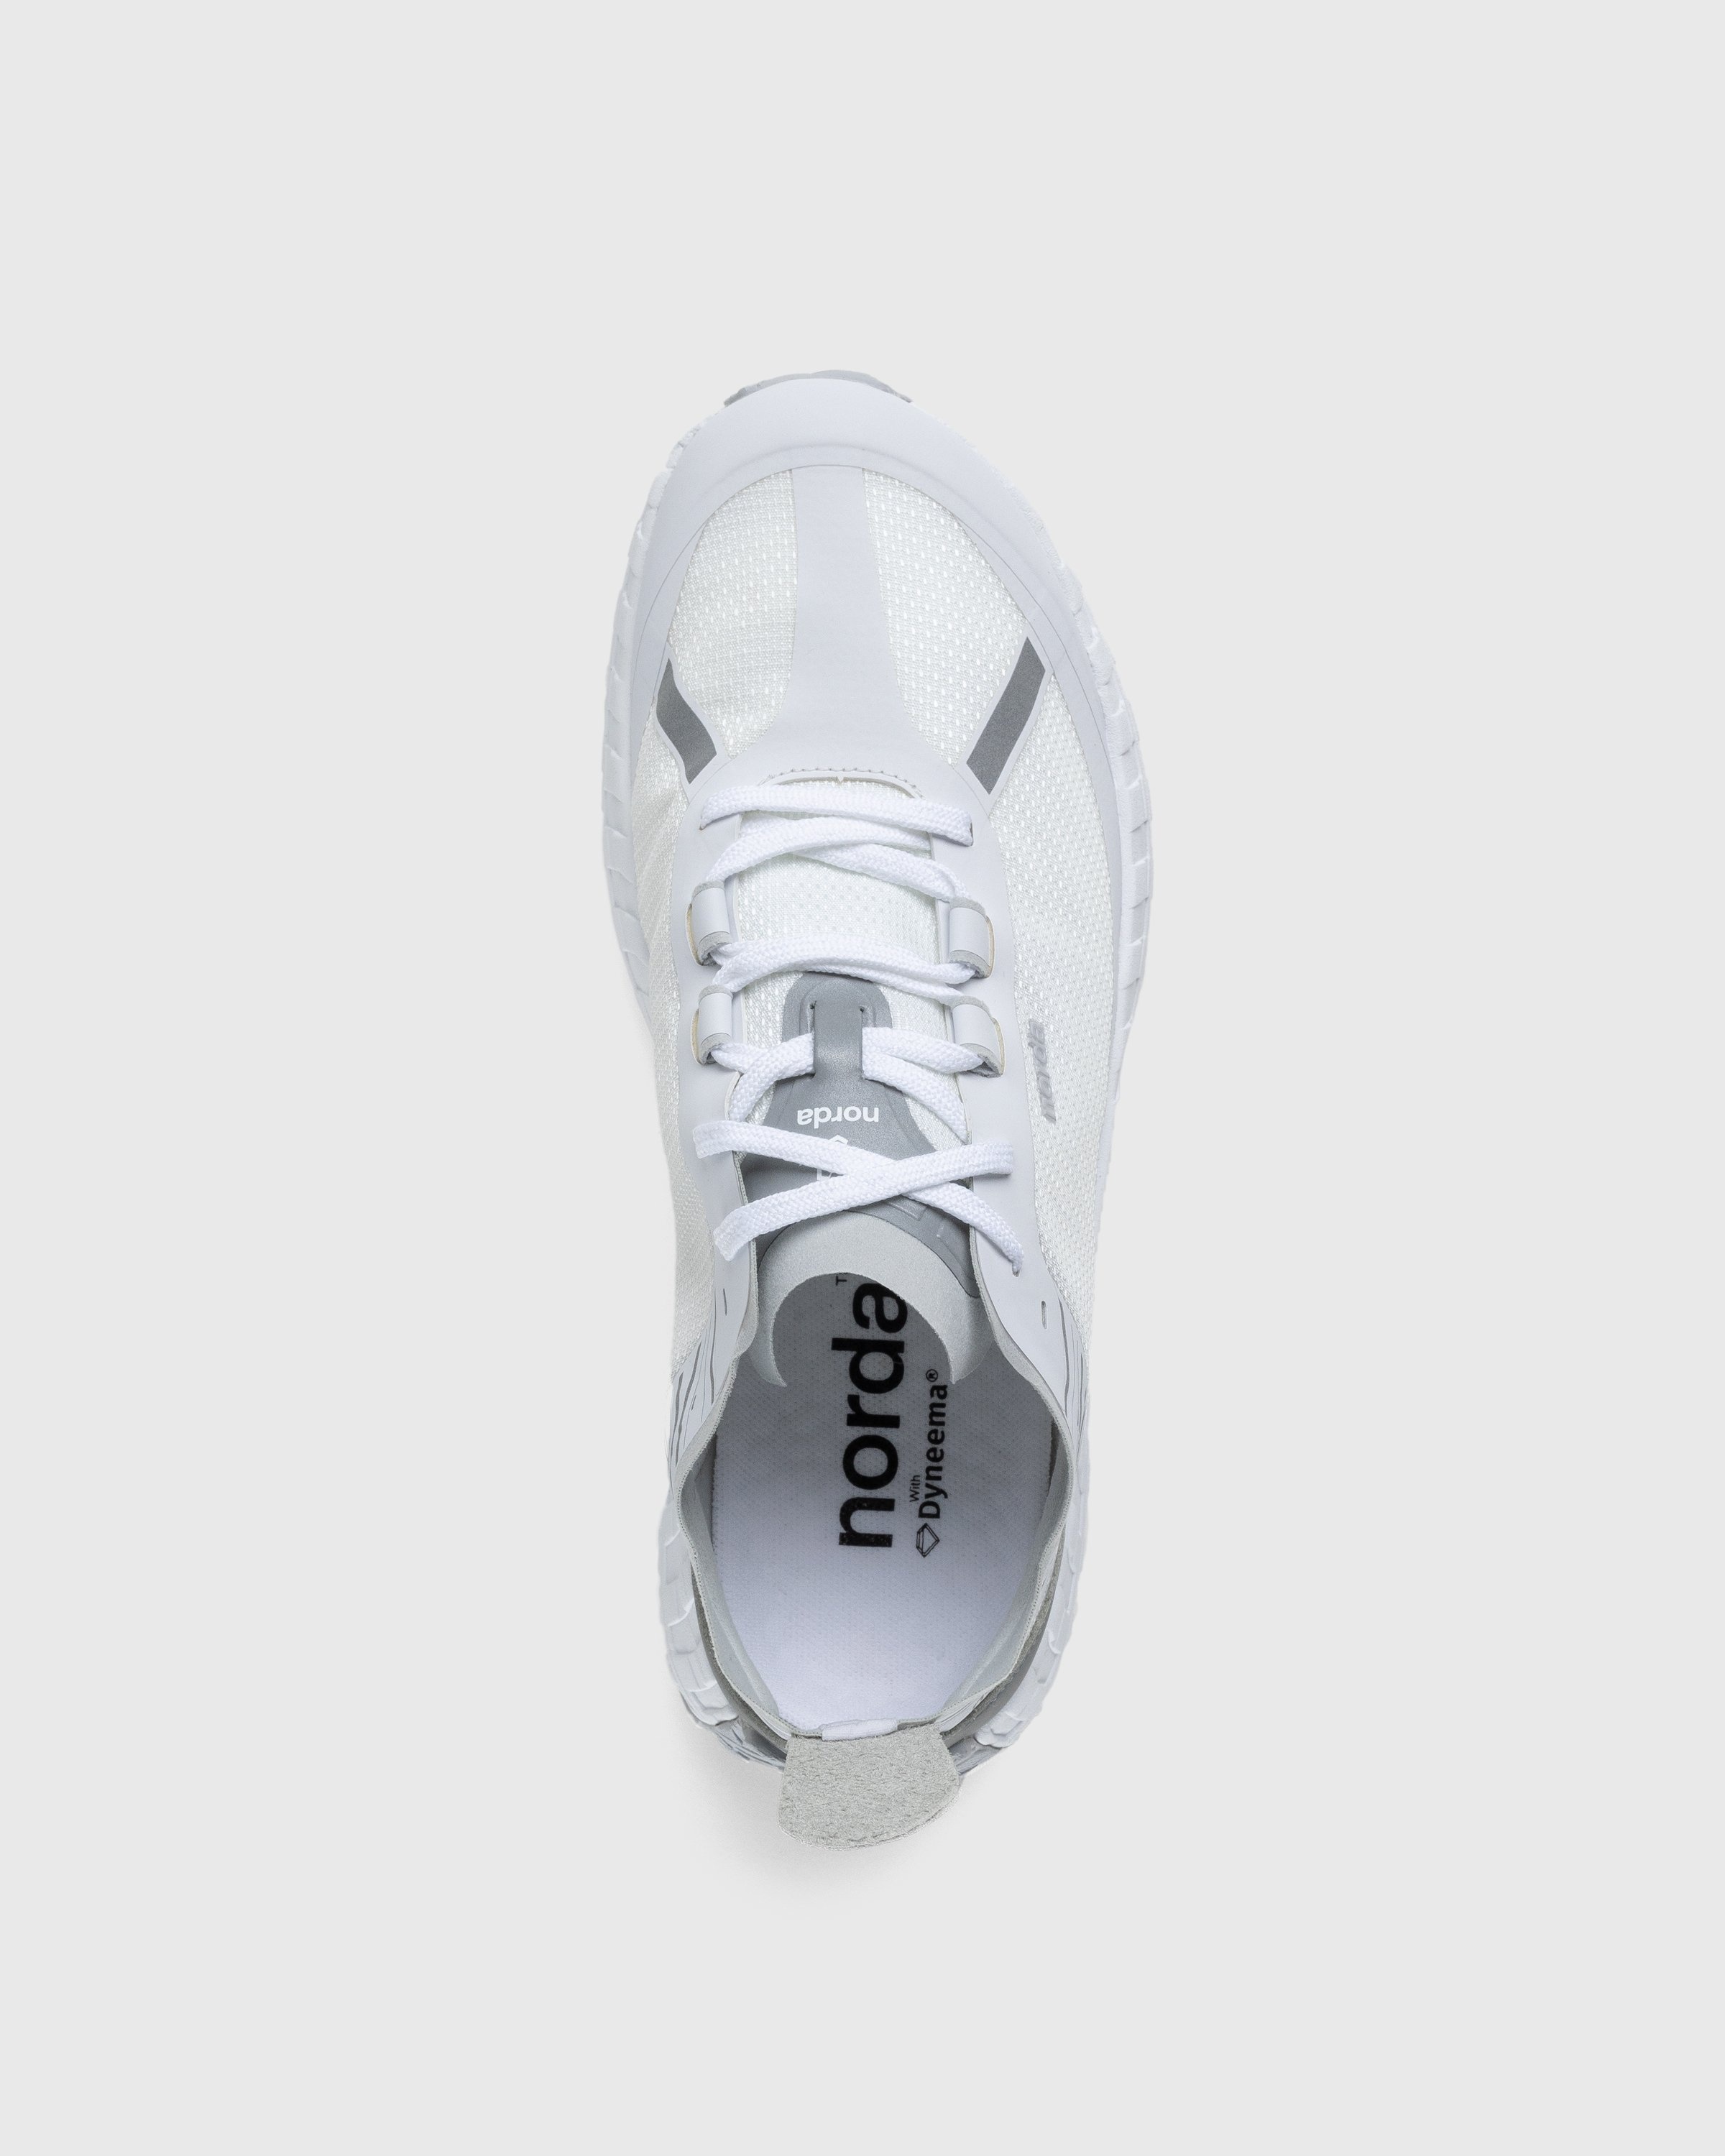 Norda – 001 M White/Grey - Sneakers - White - Image 5